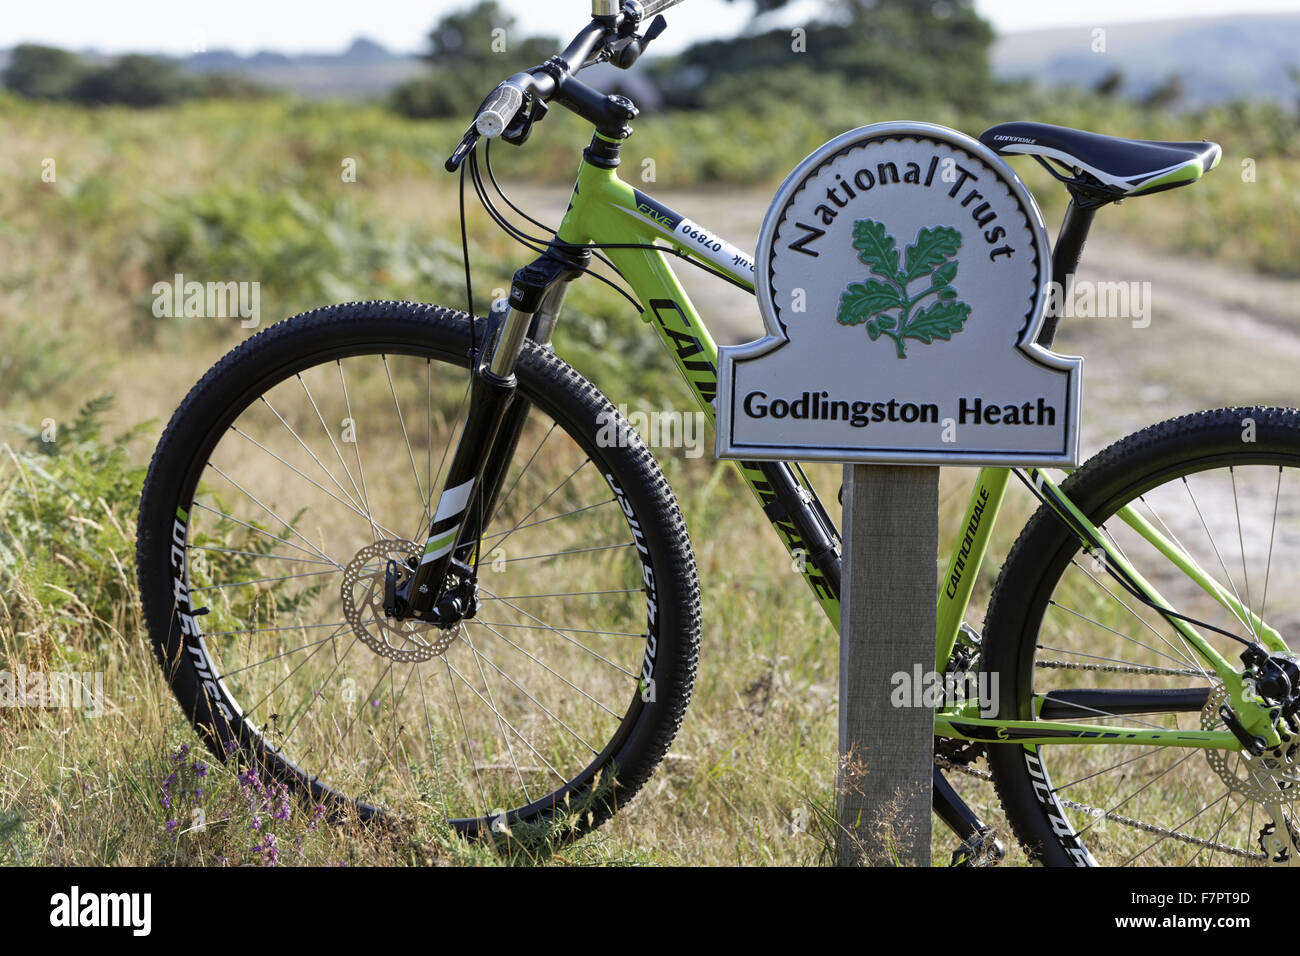 Fahrrad gelehnt ein Zeichen für Godlingston Heath auf der Grünlandflächen Track, Studland, Dorset, Teil der Rempstone Ride-Radroute. Es gibt mehr als 54 Meilen von Wanderwegen und Reitwegen Besucher in Purbeck erkunden. Stockfoto